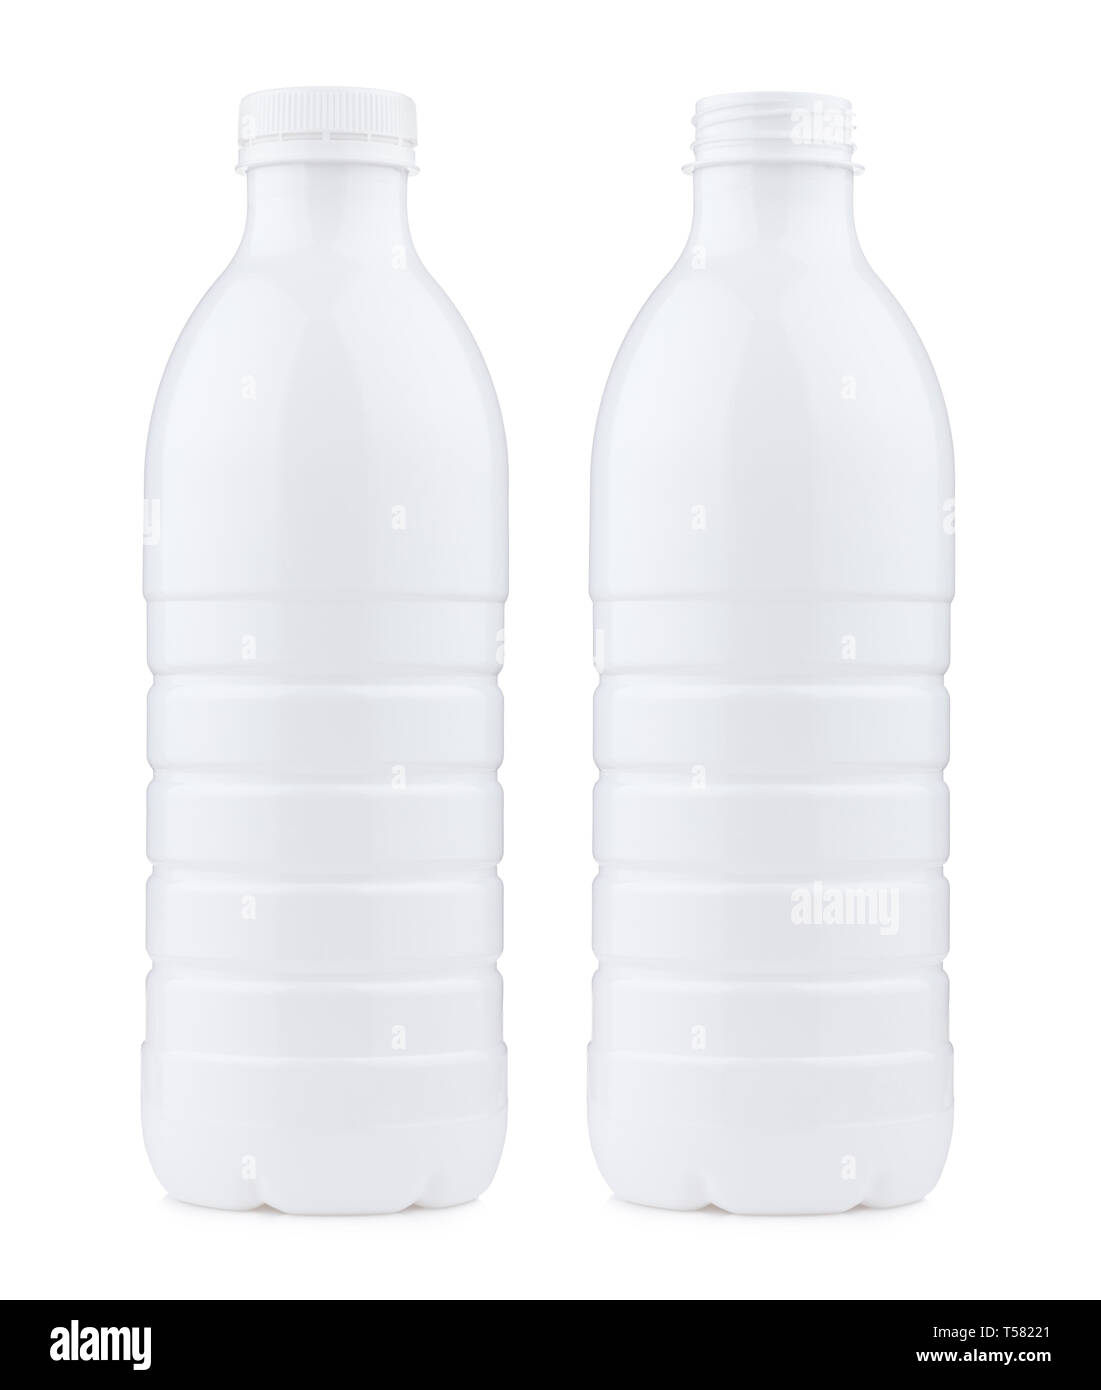 Bouteille plastique 1 litre de lait ouvert et fermé, isolé sur fond blanc  Photo Stock - Alamy